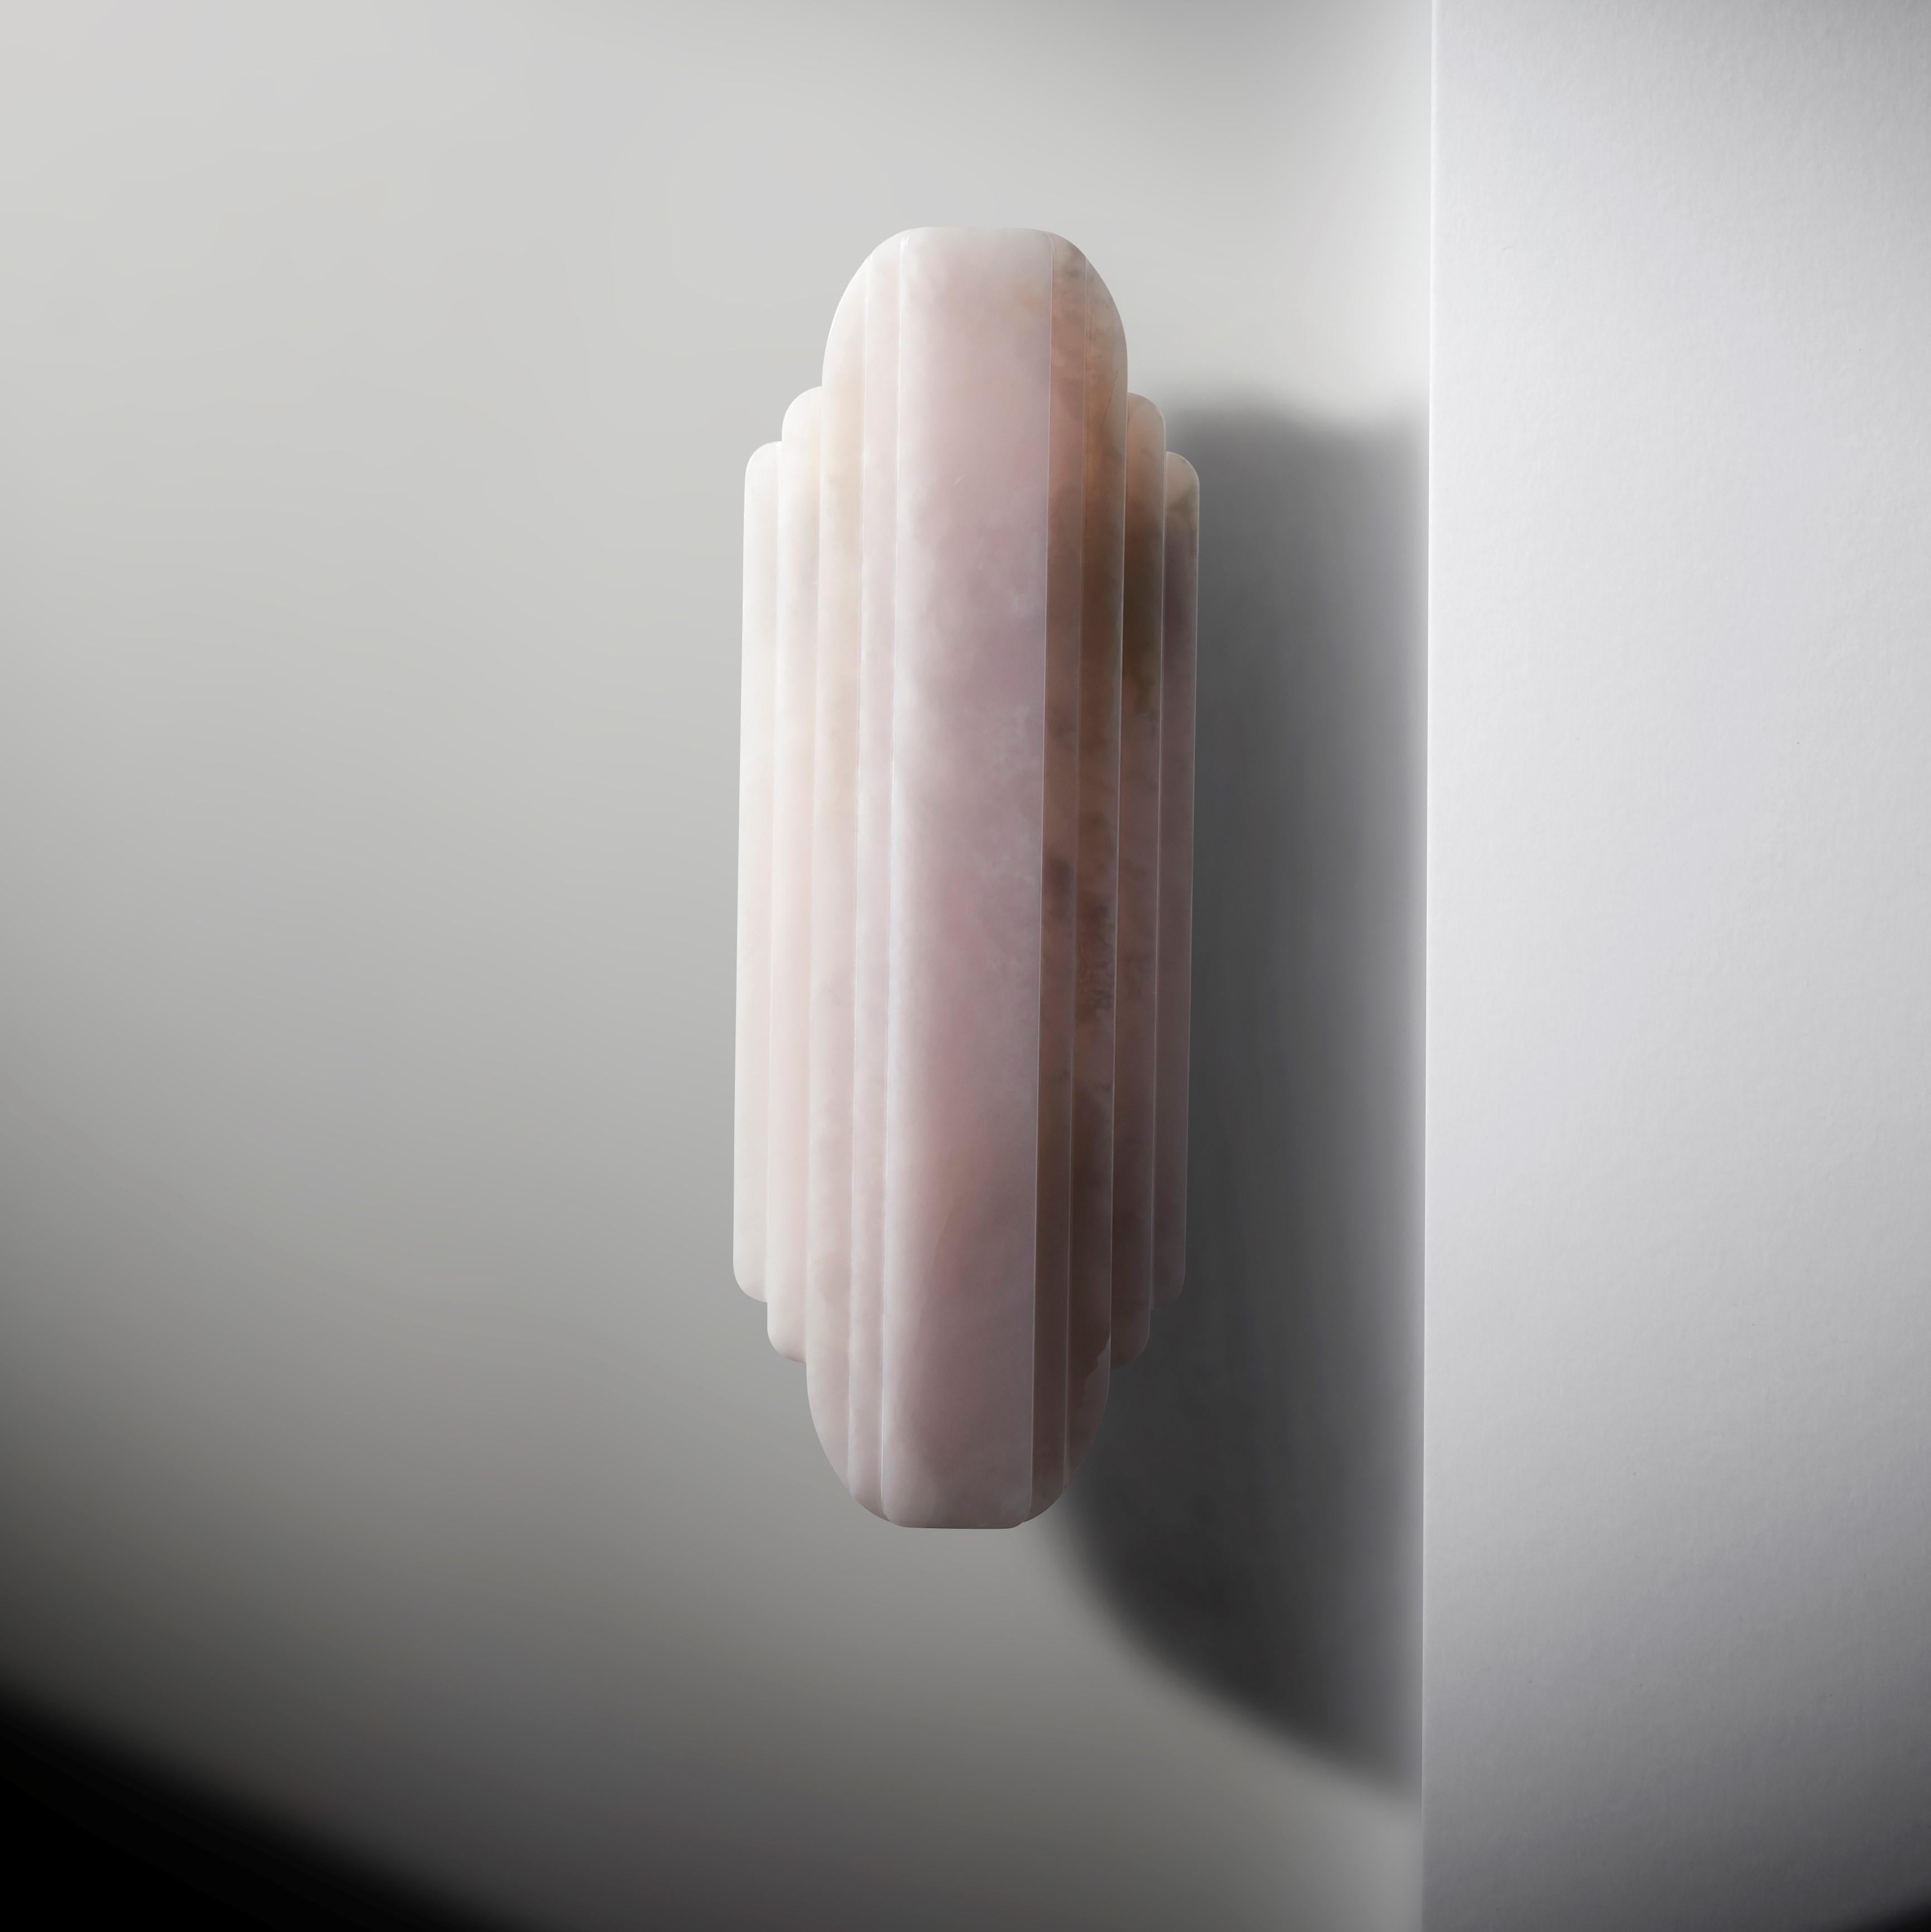 Walljewel de Lisette Rützou
Dimensions : 15 x H 42 cm
MATERIAL : Onyx rose, vert et blanc.

 Le design de Lisette Rützou est motivé par l'envie d'articuler une histoire. Inspiré par la beauté des matériaux, des formes et de l'architecture,